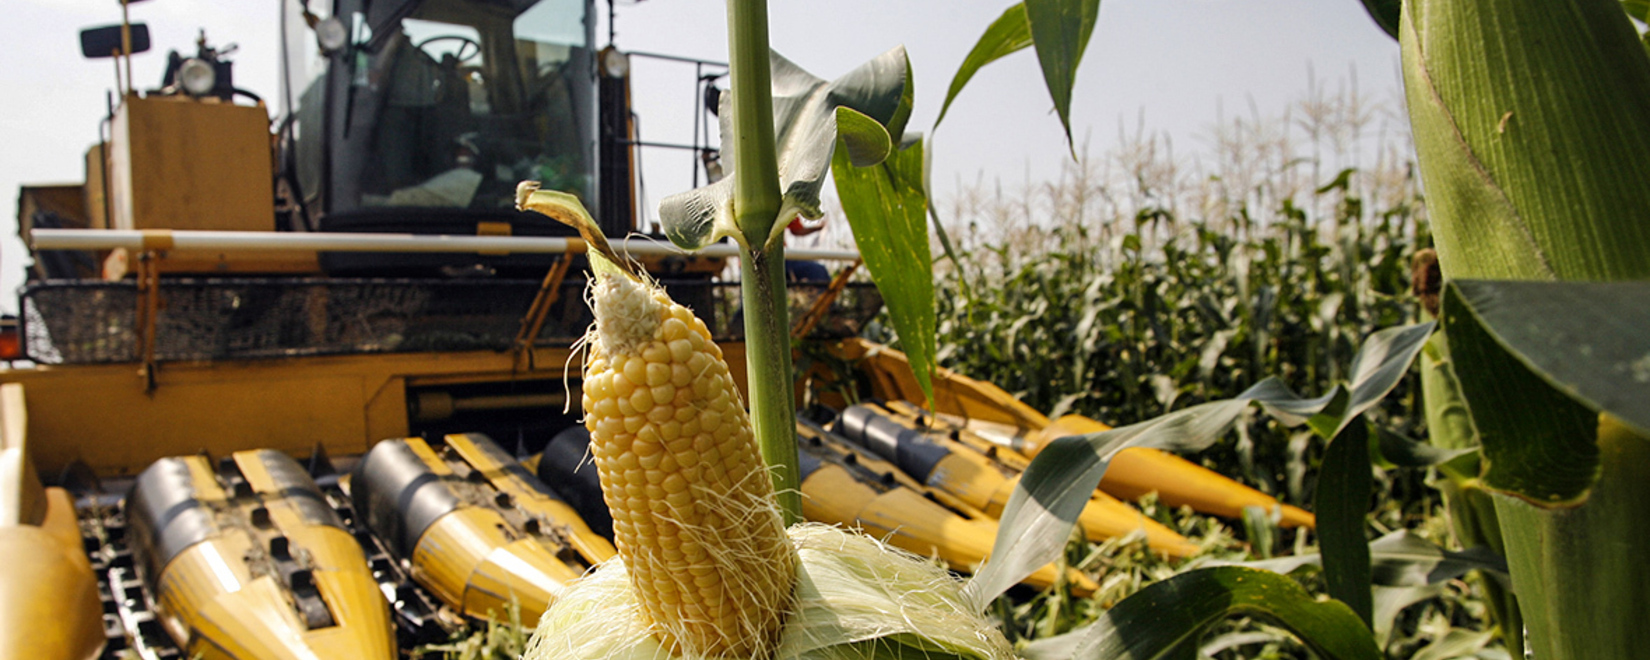 Фонд Говарда Г. Баффета и Corteva Agriscience подарили украинским фермерам семена Pioneer для увеличения урожайности и поддержки сельского хозяйства